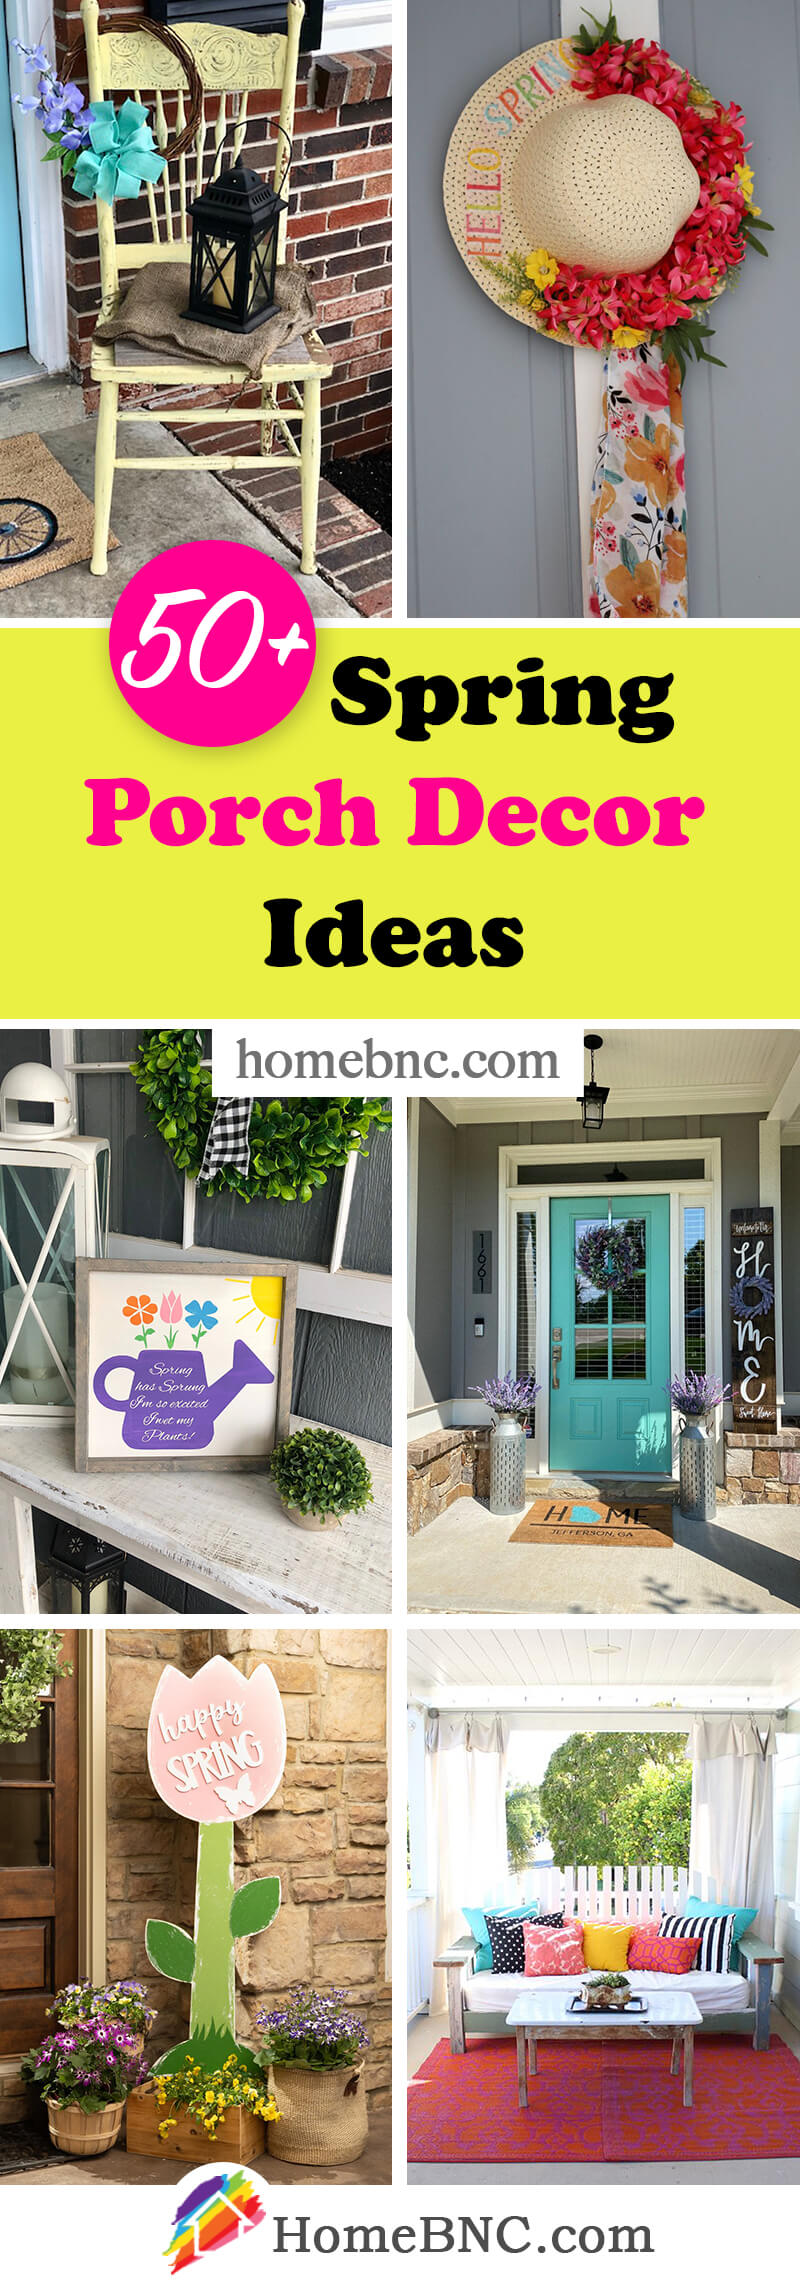 Spring Porch Decor Ideas